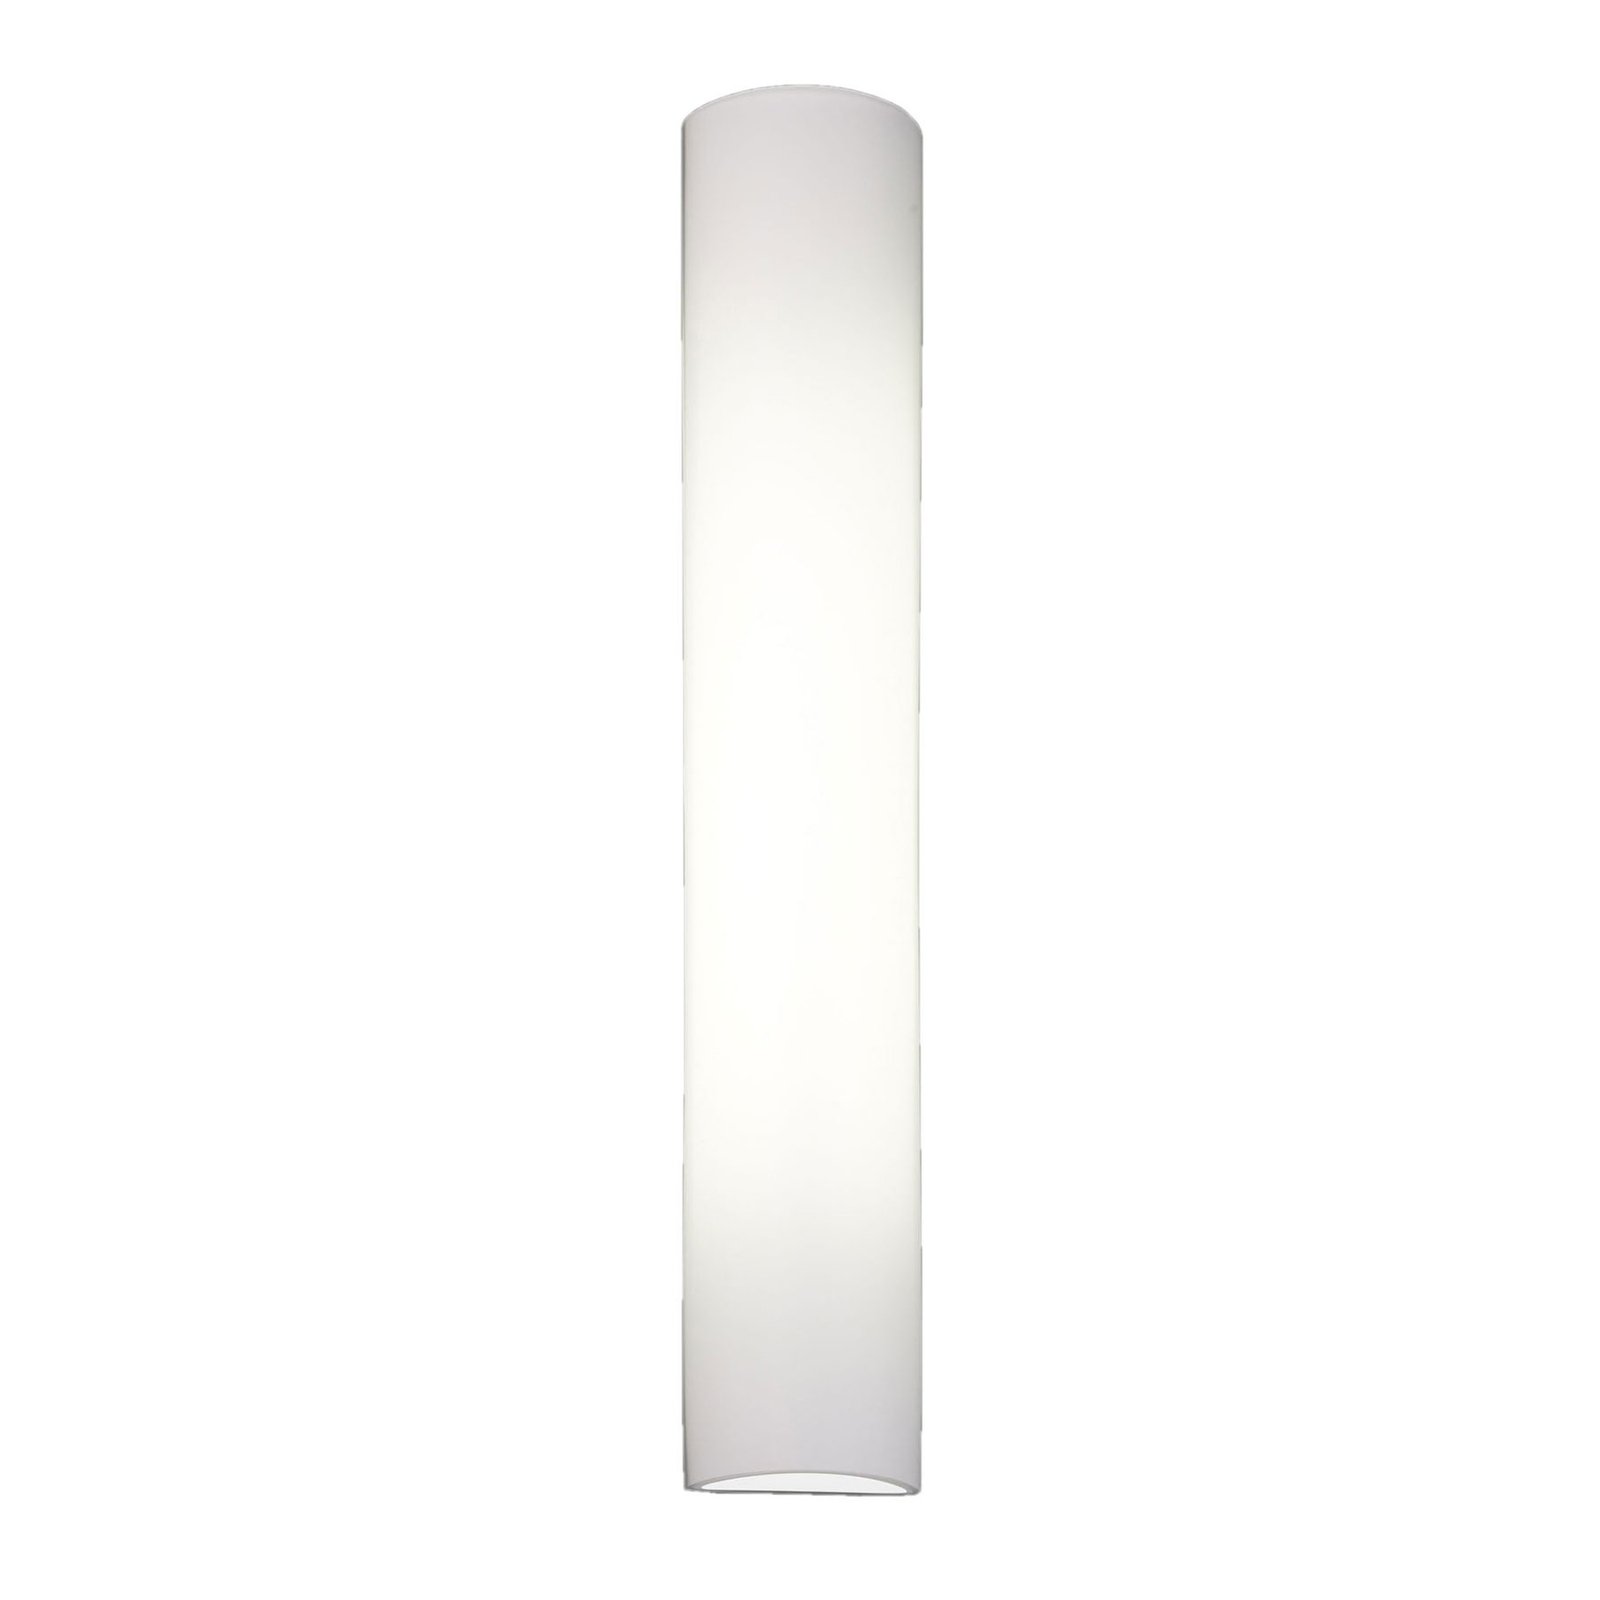 BANKAMP Cromo LED-vegglampe av glass, høyde 40cm